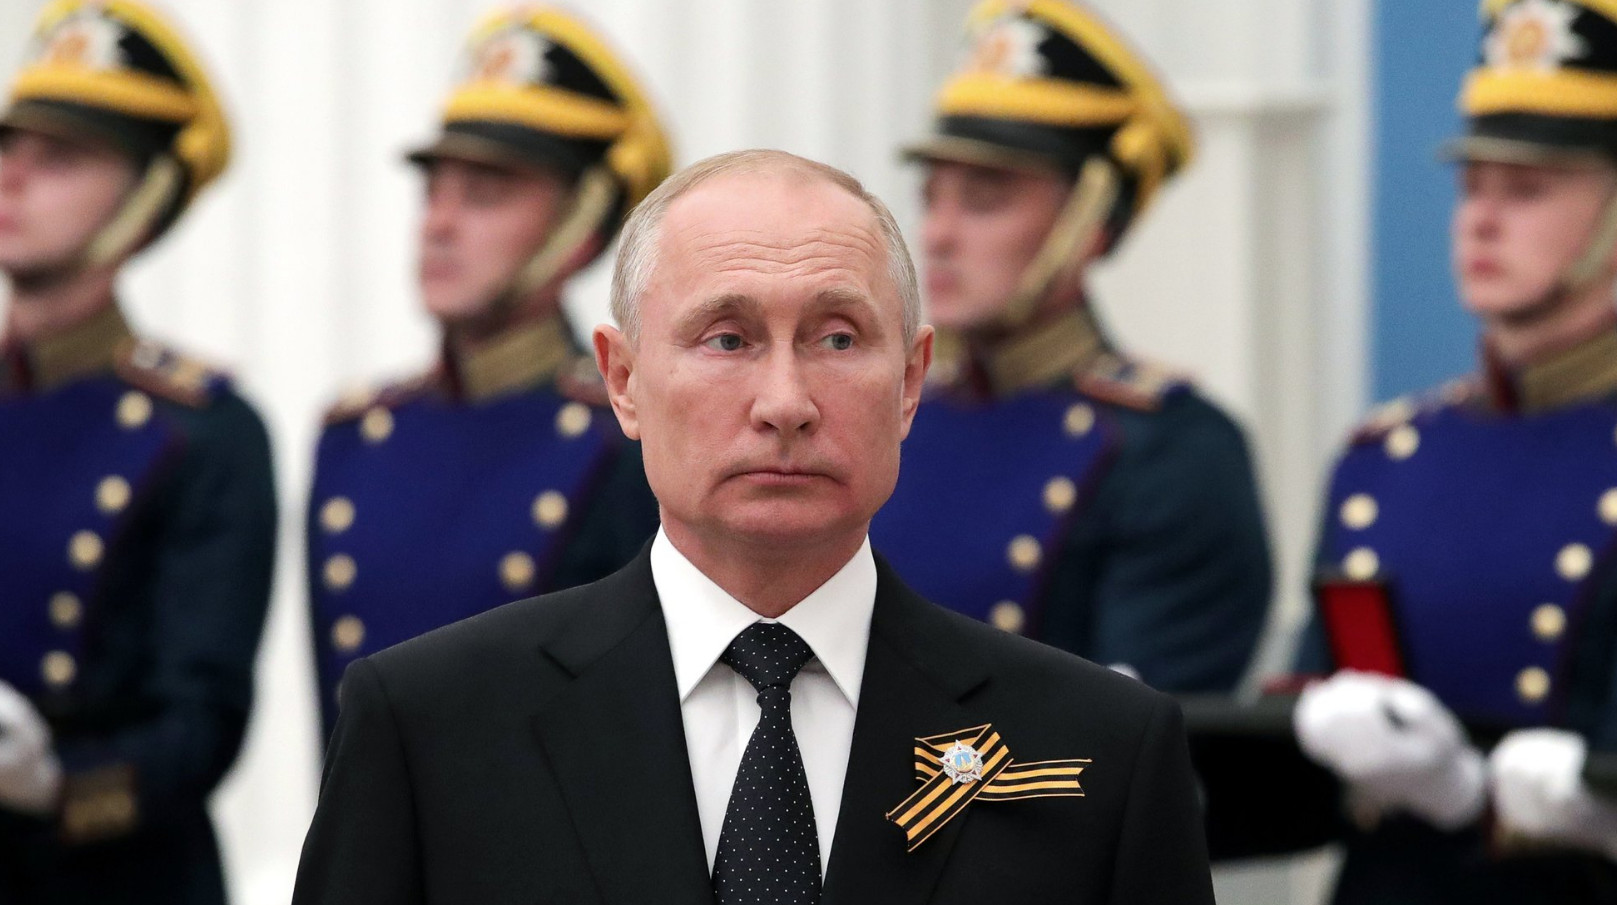 Πούτιν – ταξιτζής: Η αποκάλυψη του προέδρου για τις οικονομικές δυσκολίες στο παρελθόν